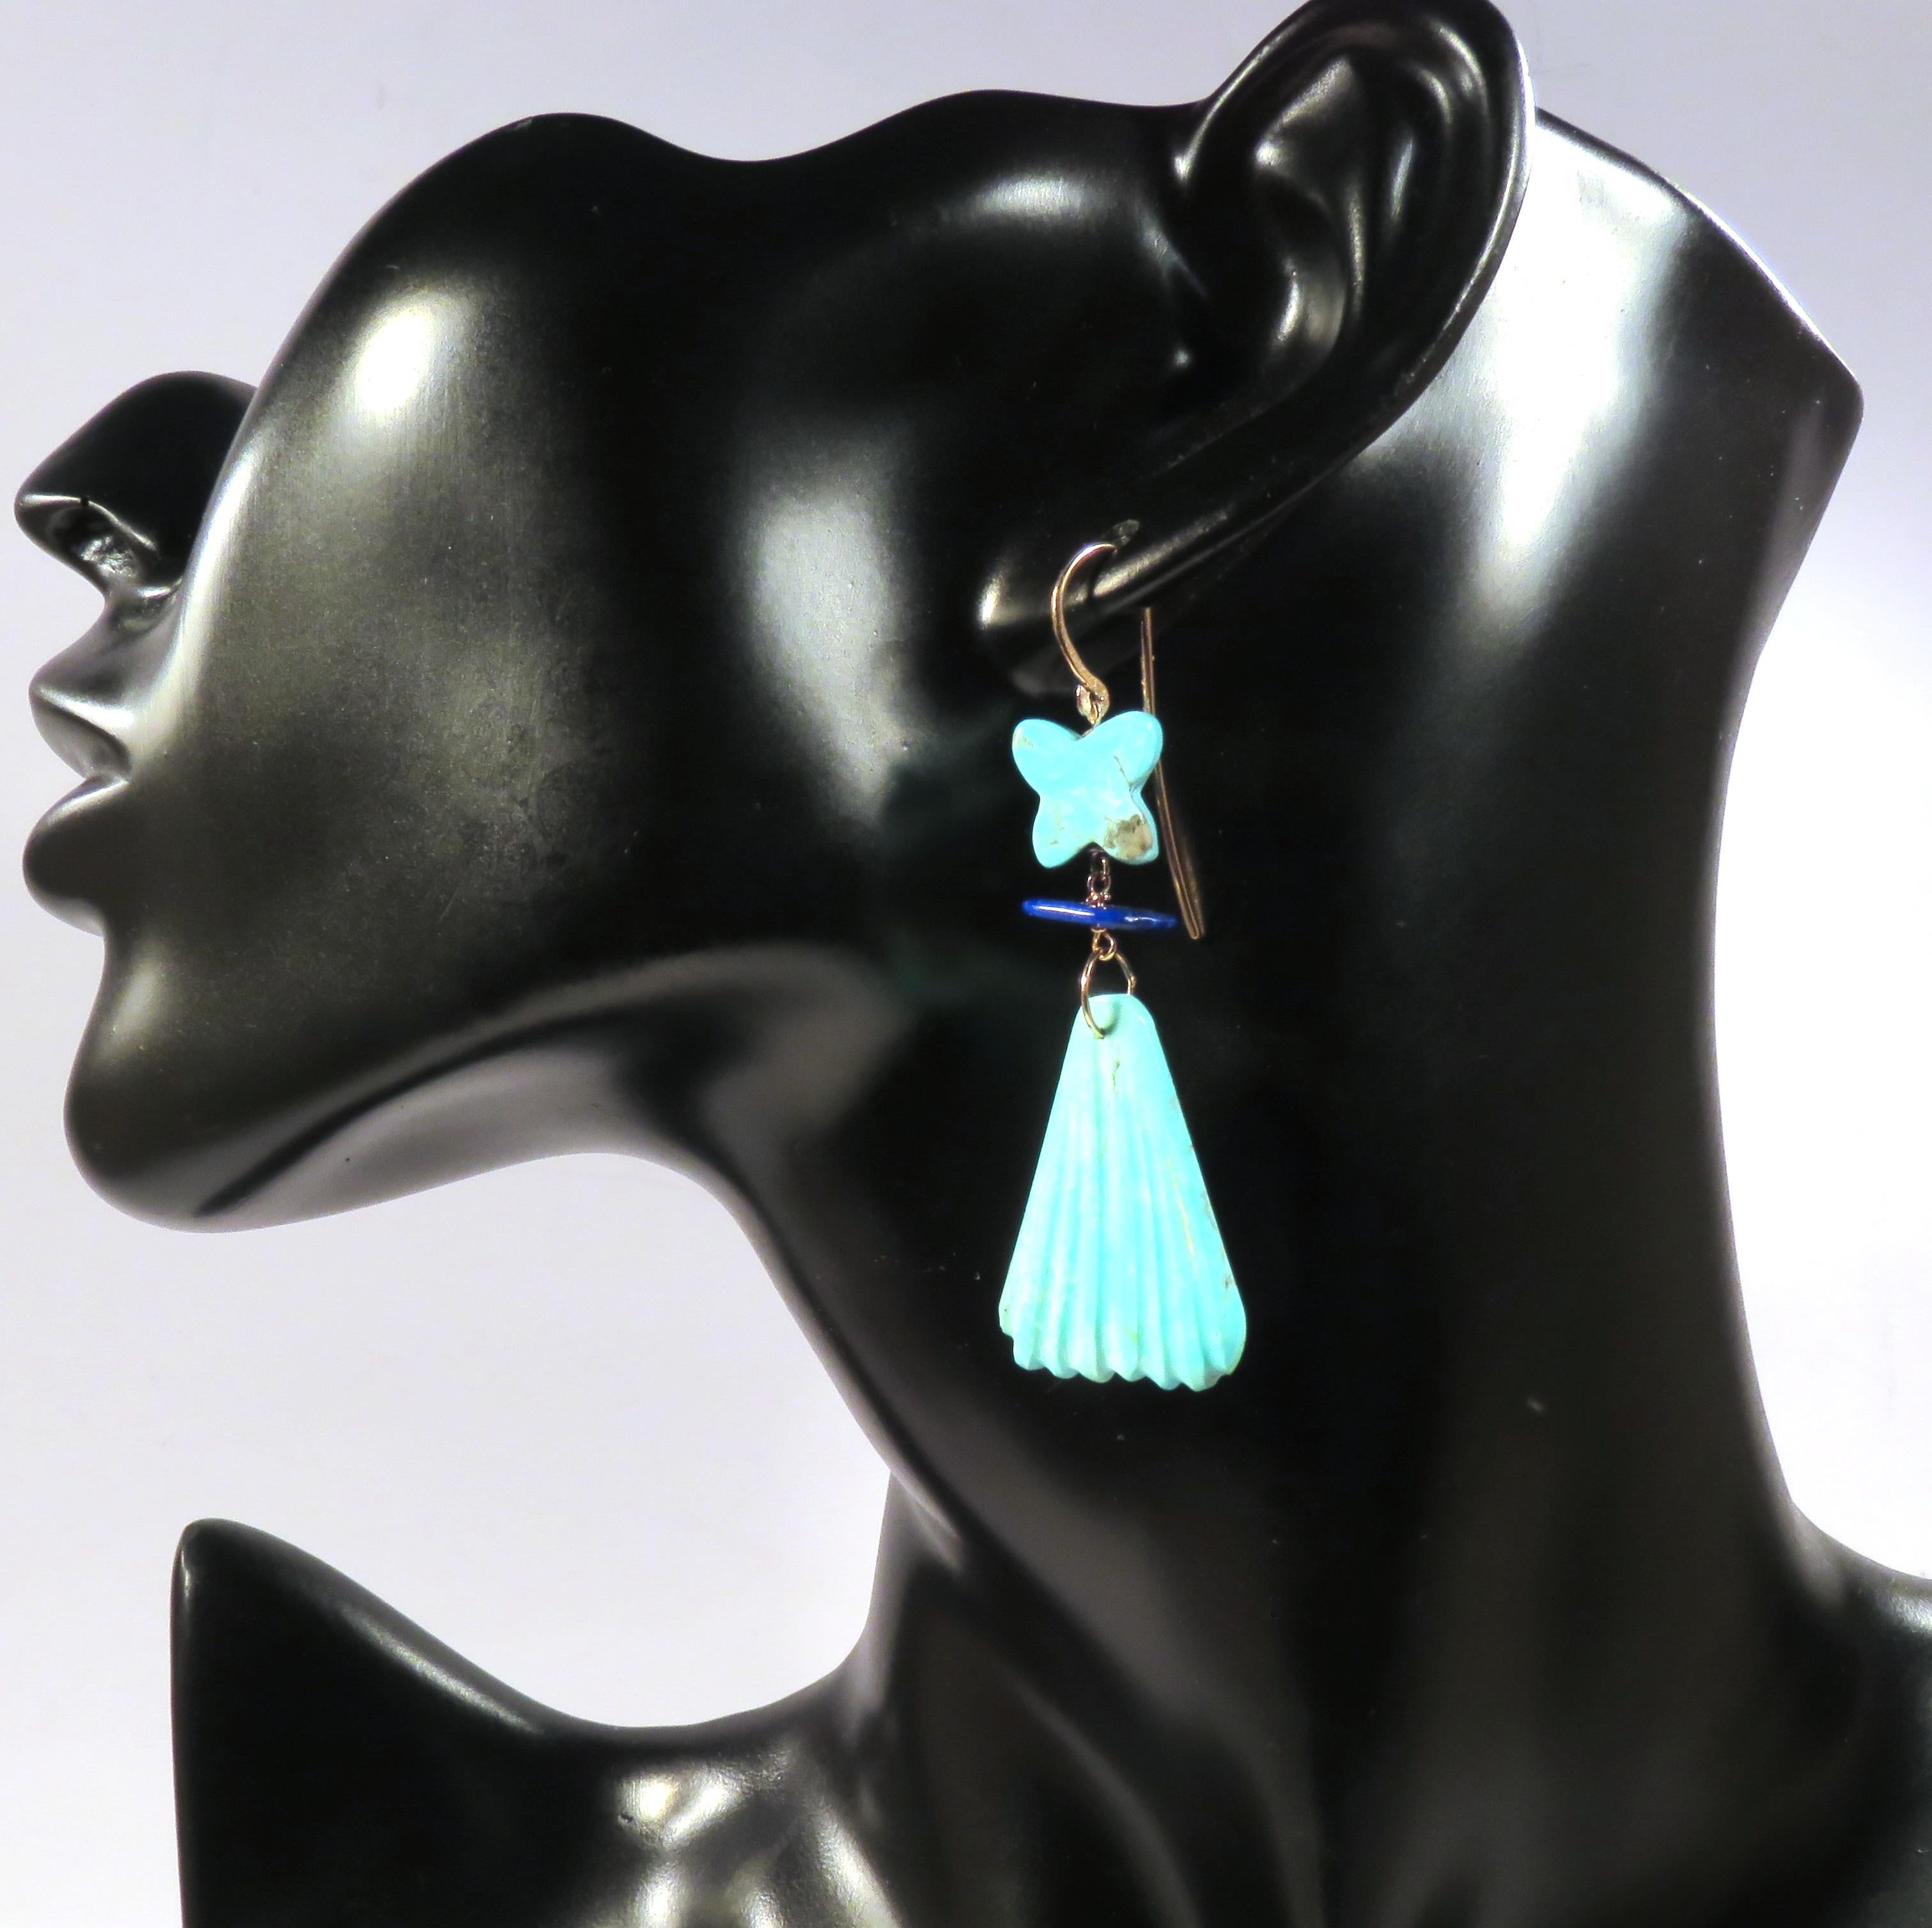 Boucles d'oreilles pendantes présentant de véritables éventails de turquoise sculptés à la main, de petits papillons de turquoise bleu clair vif et du lapis-lazuli naturel. Chaque boucle d'oreille est fabriquée à la main en or rose 9 carats. La